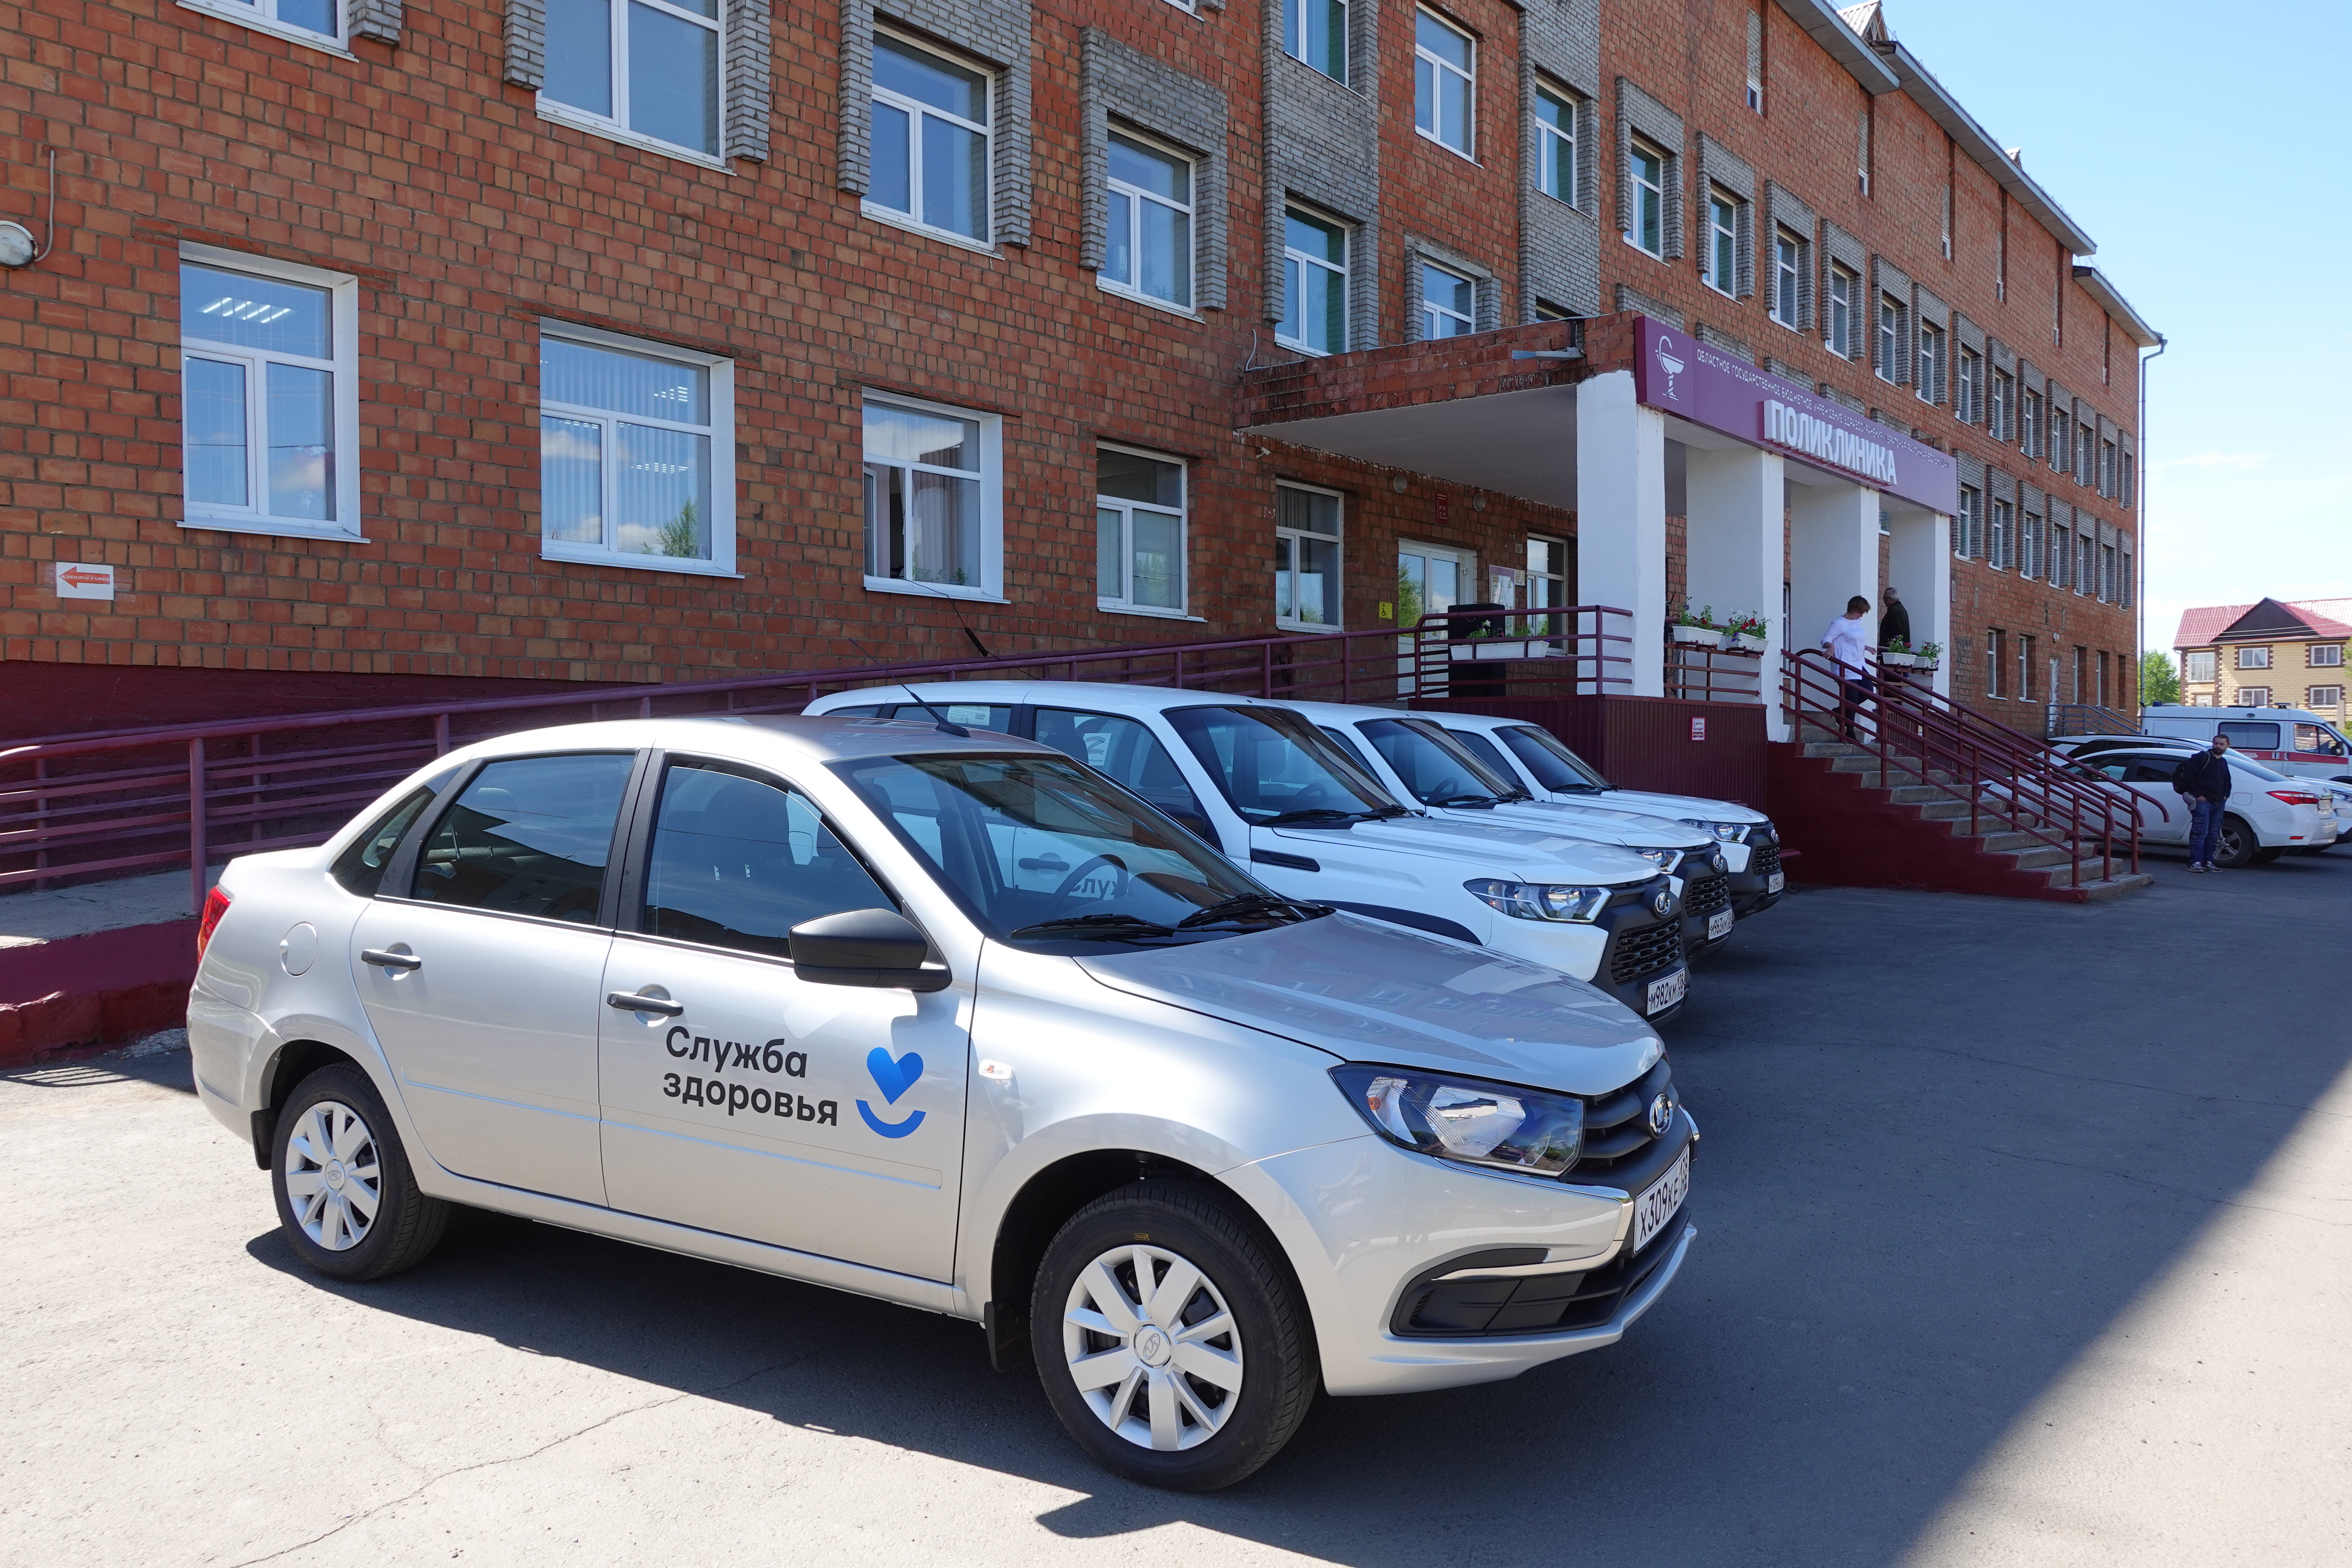 Медицинские учреждения Братского района получили новые автомобили